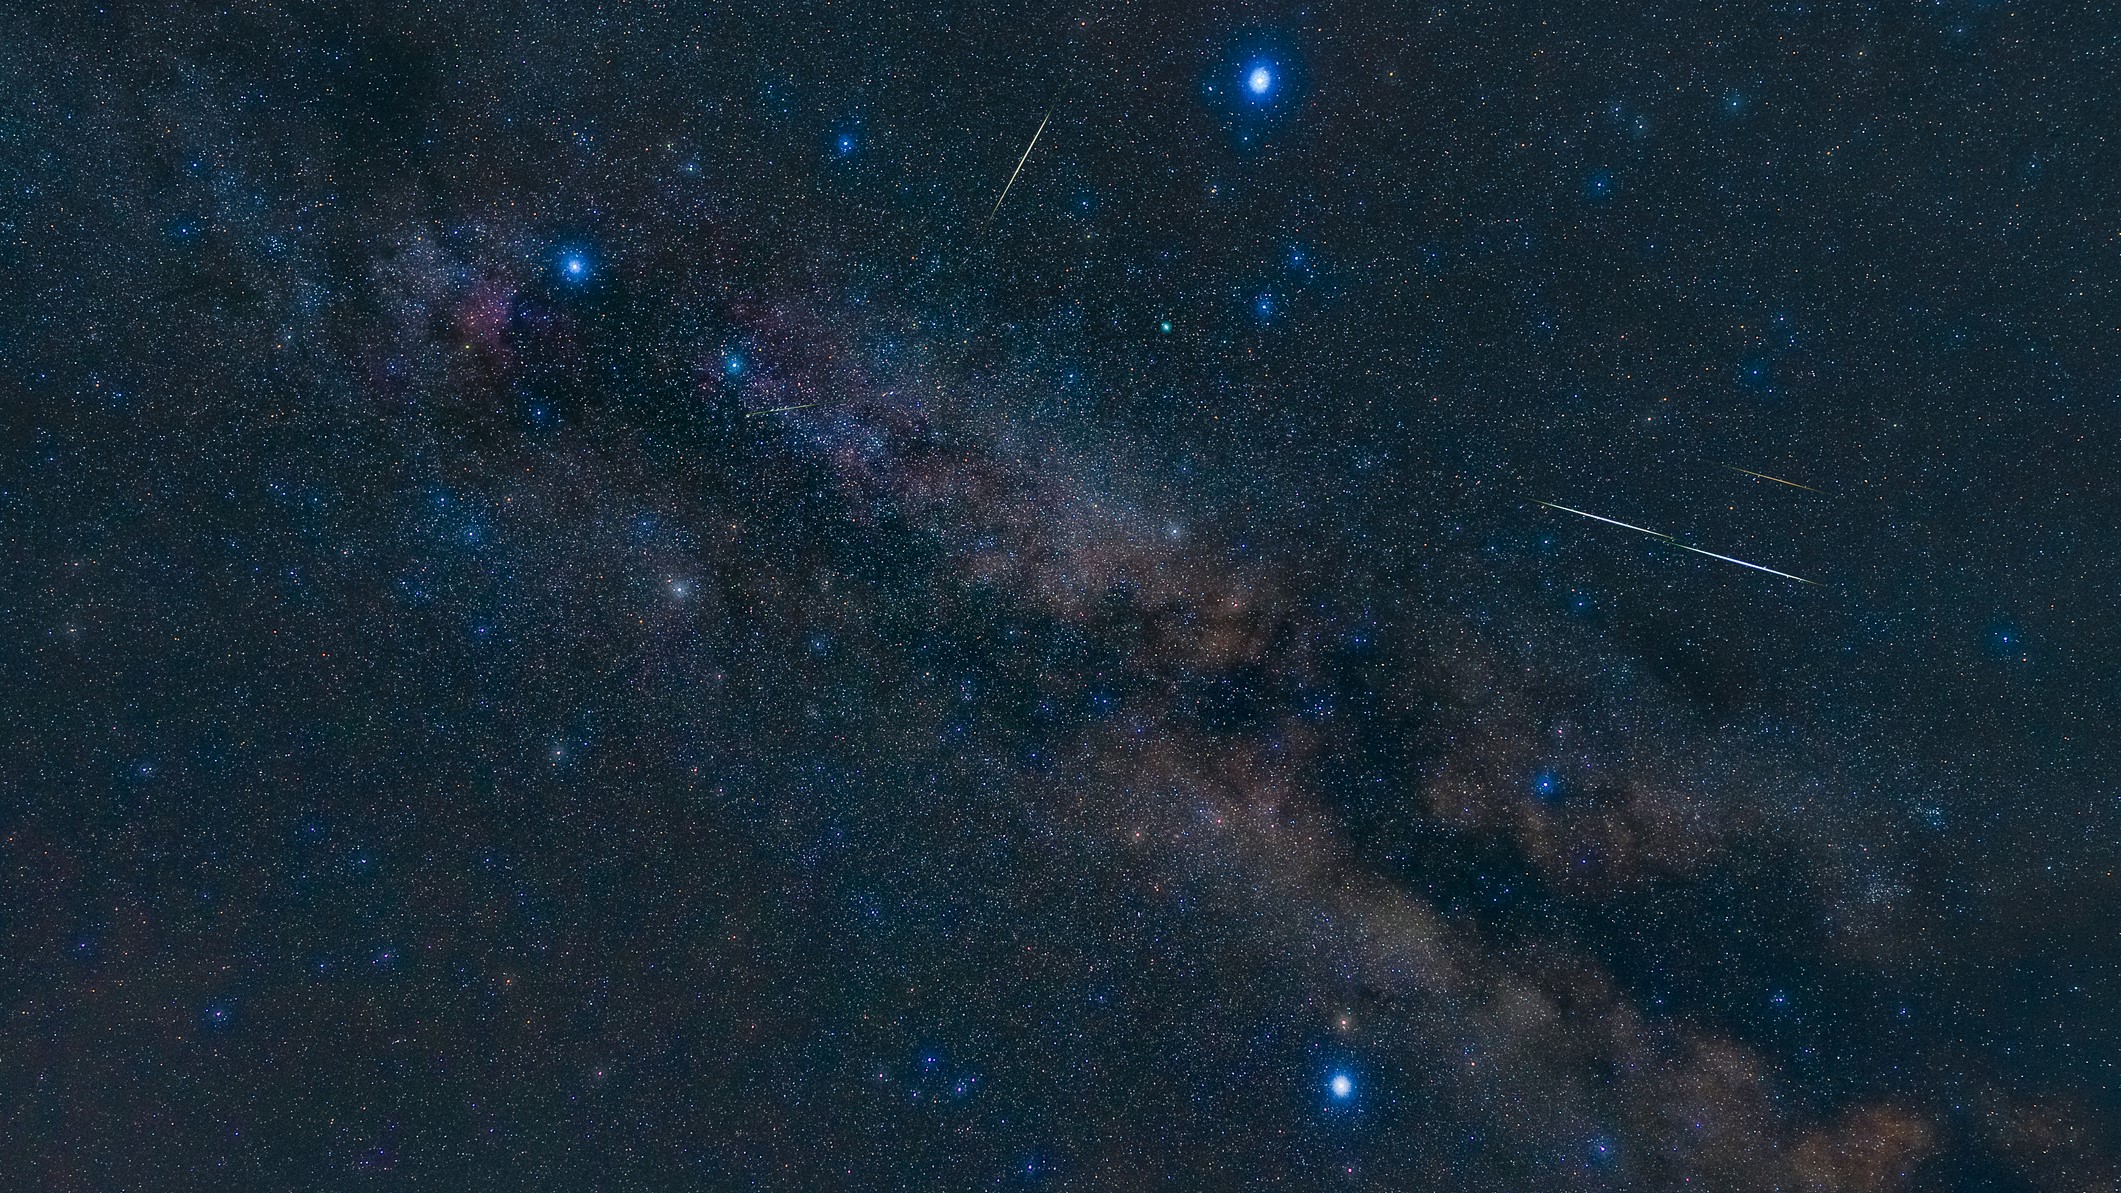 drie heldere sterren zijn gerangschikt in een driehoekige formatie aan de nachtelijke hemel.  Sommige meteoorstrepen zijn zichtbaar over de afbeelding en de Melkweg strekt zich uit over de achtergrond.